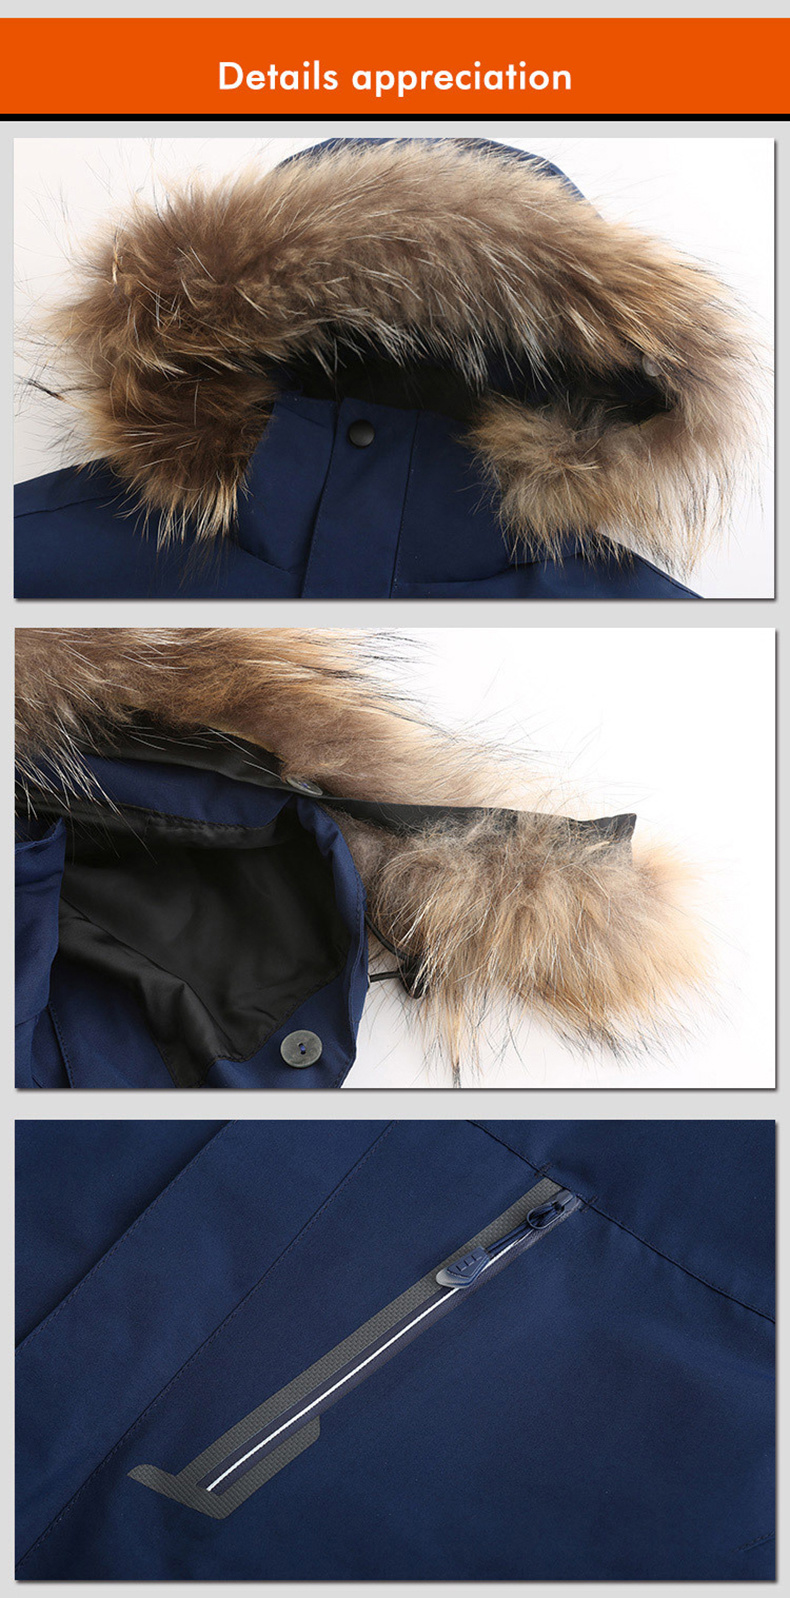 Winter Warm Heated Jacket Velvet Windbreaker Mountaineering Wear Unisex Th21041